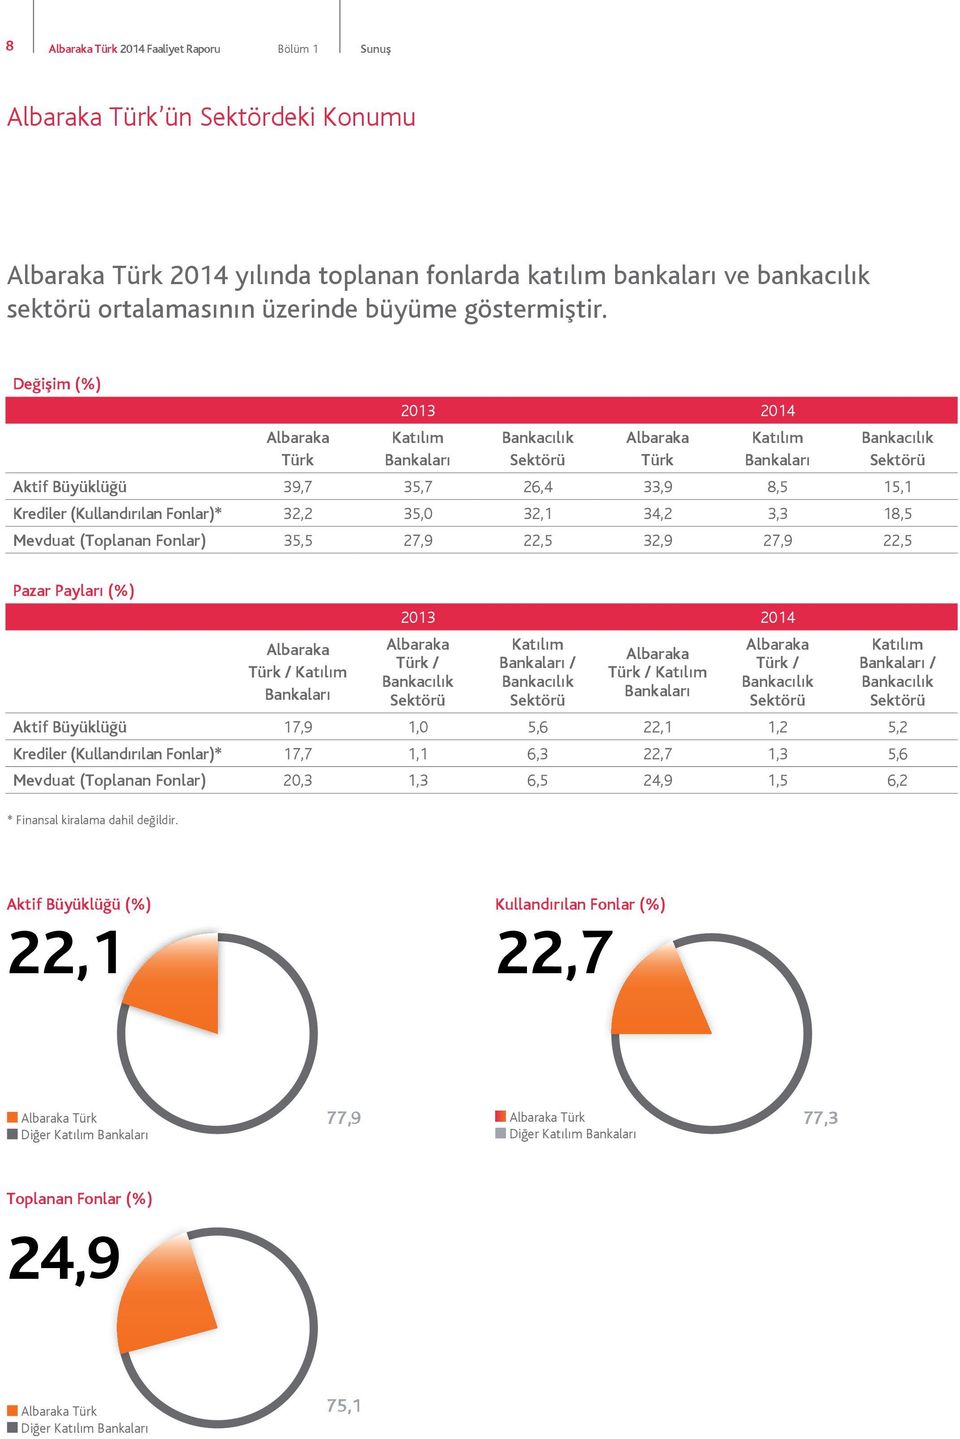 Değişim (%) Albaraka Türk 2013 2014 Katılım Bankaları Bankacılık Sektörü Albaraka Türk Katılım Bankaları Bankacılık Sektörü Aktif Büyüklüğü 39,7 35,7 26,4 33,9 8,5 15,1 Krediler (Kullandırılan